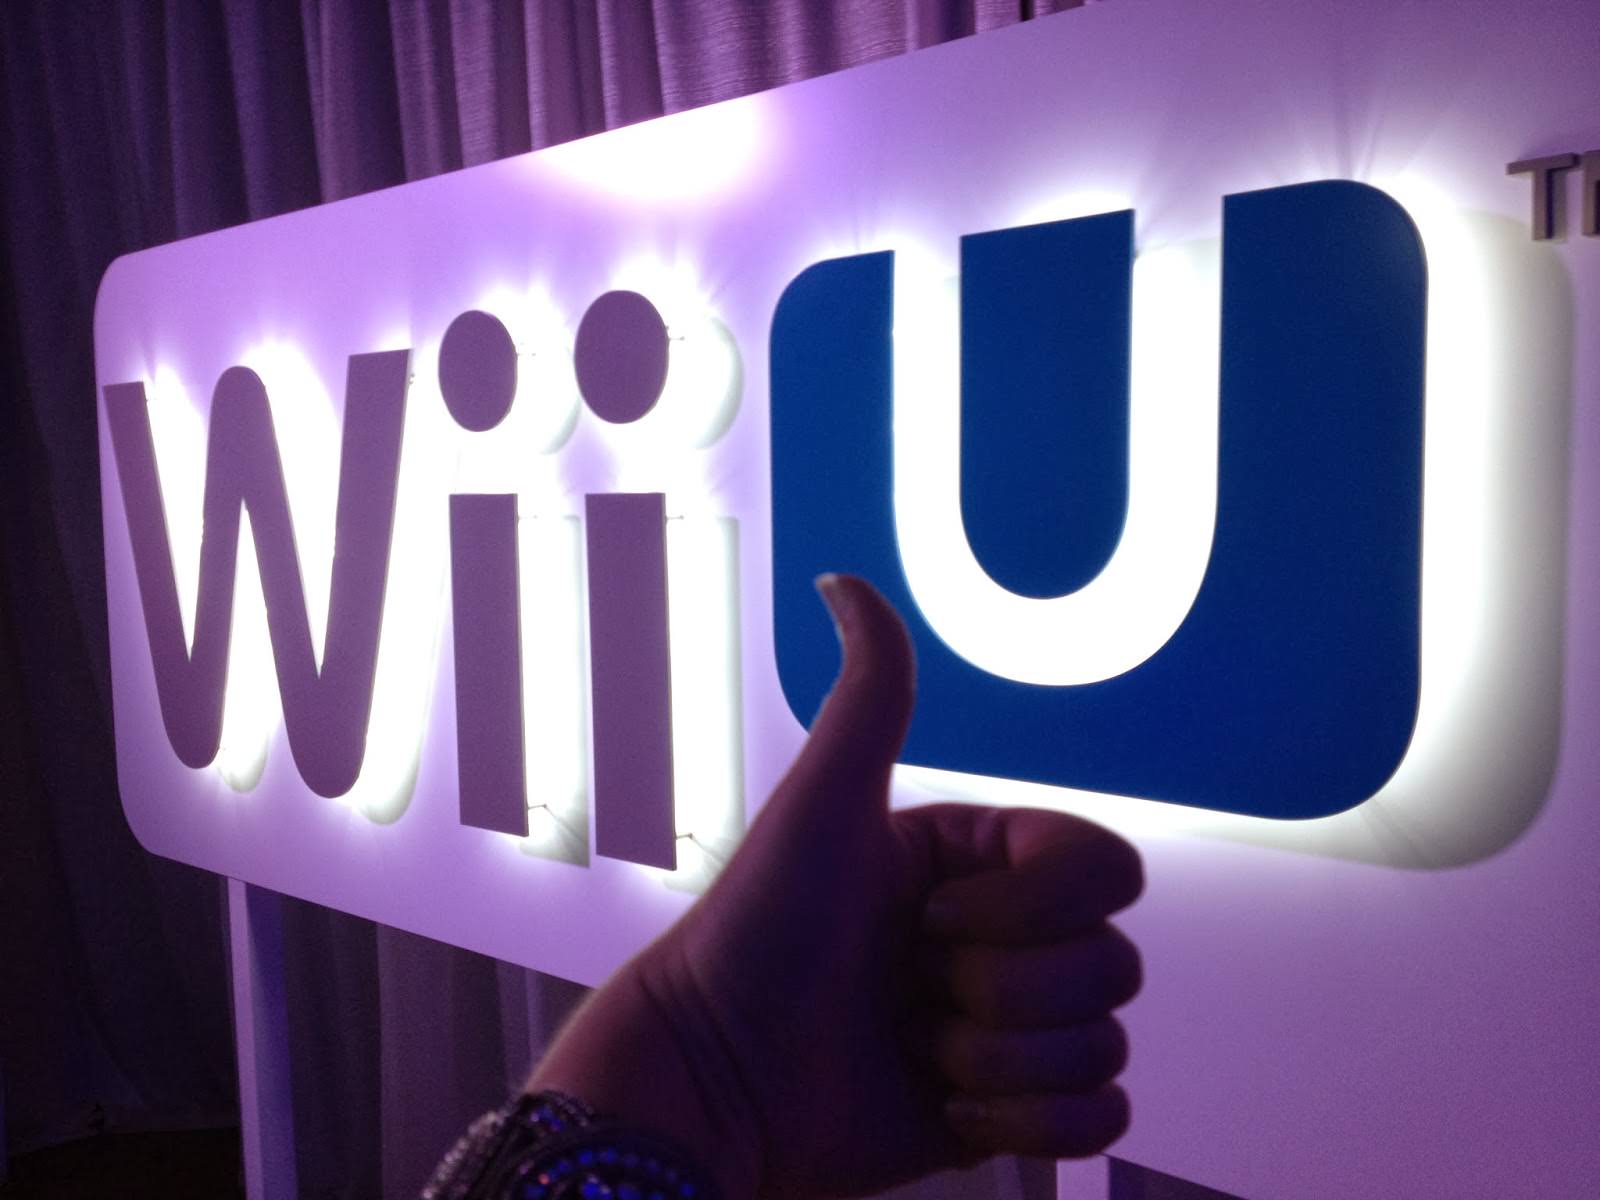 Nintendo mostrará un título exclusivo de Wii U en IGN después del evento digital en el E3